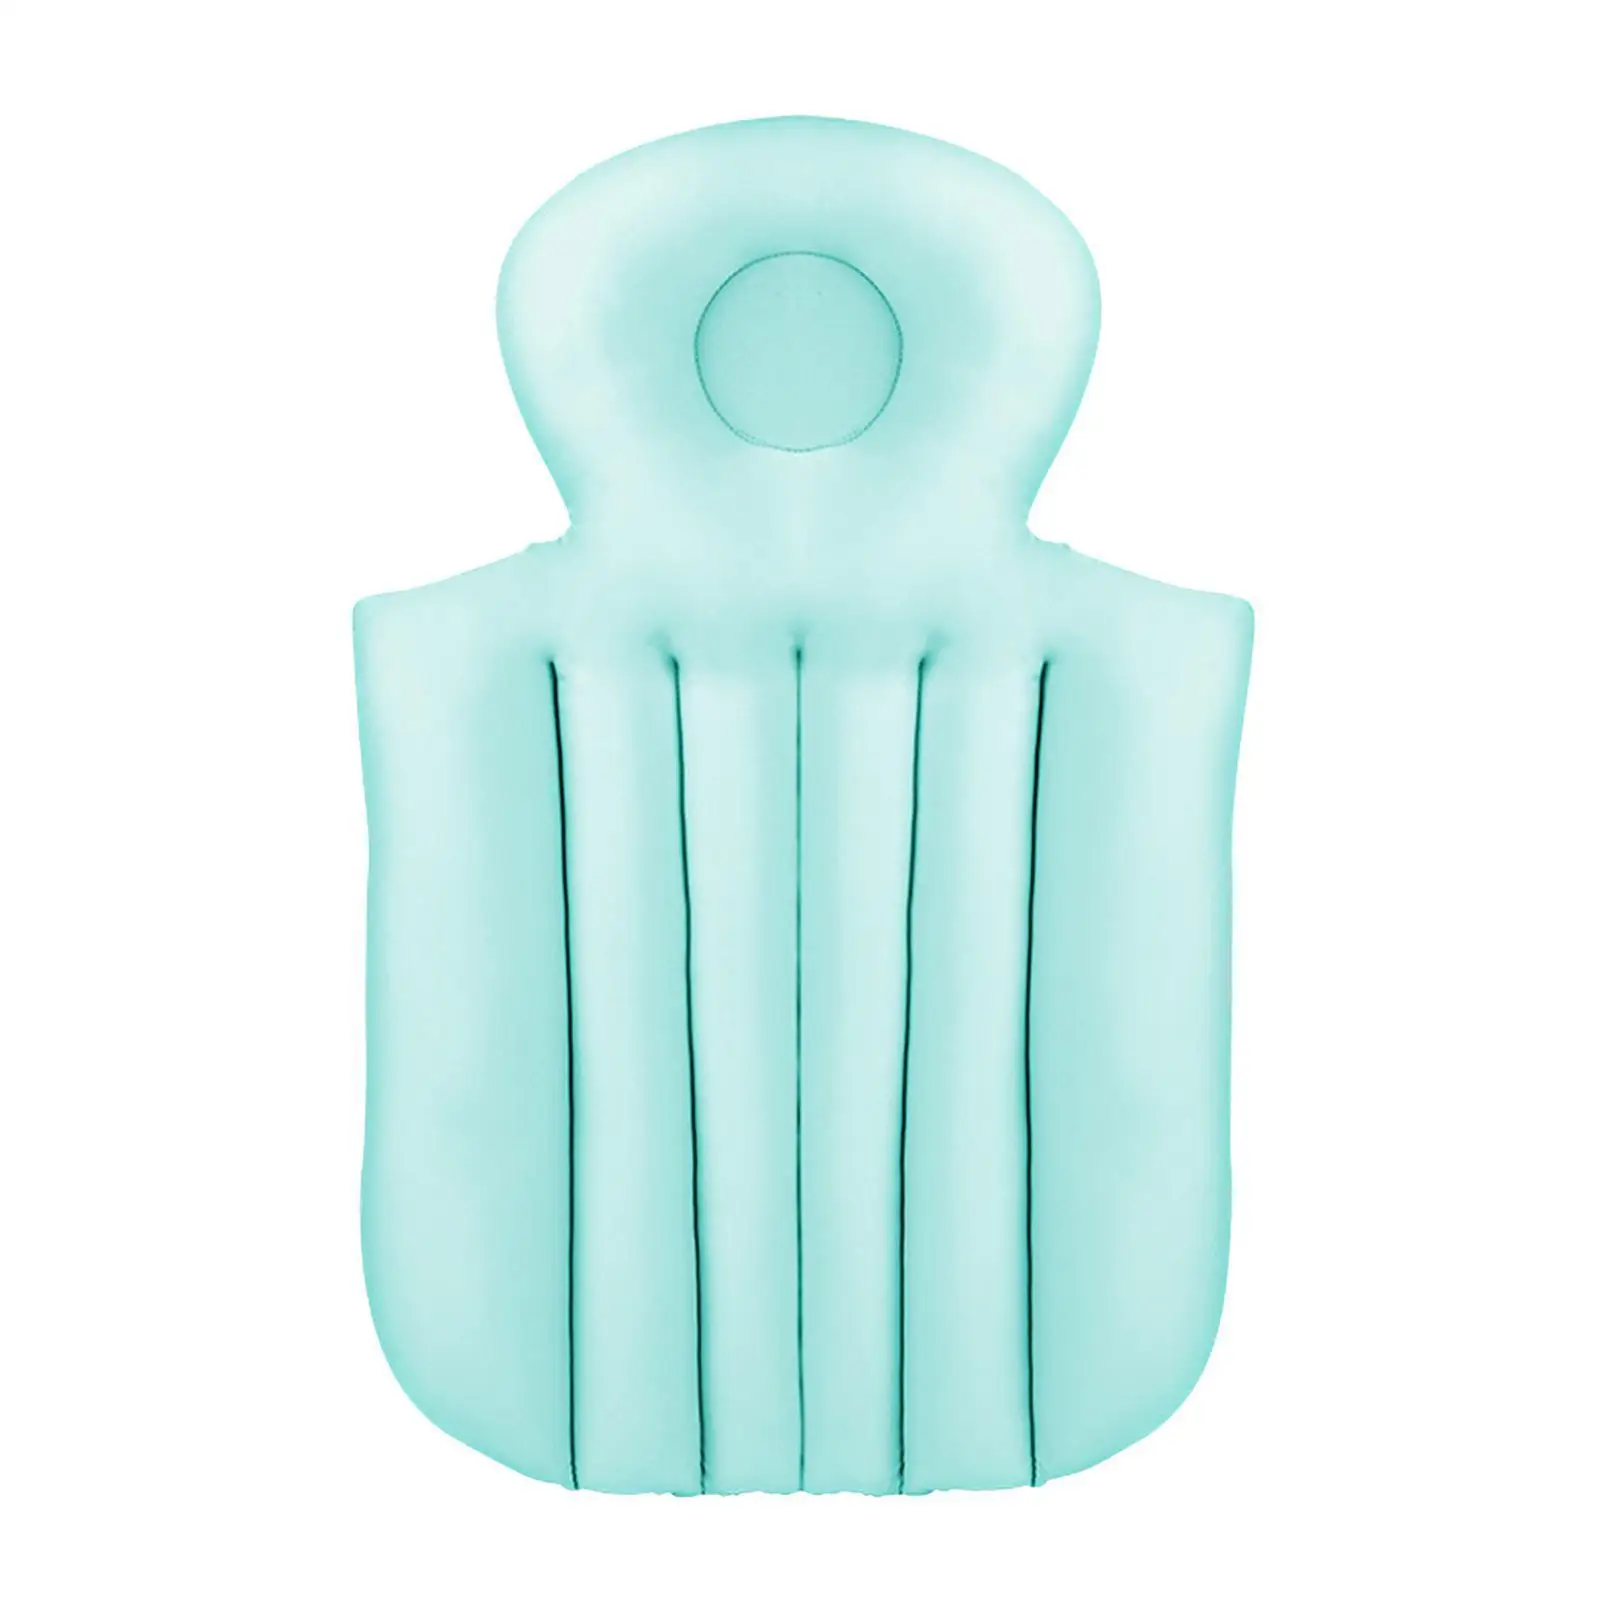 Non-Slip Spa Bathtub Mat Mattress Pad PVC Foam Breathable 3D Mesh Layers Bath Cushion With Pillow Full Body Bath Tub Pillow